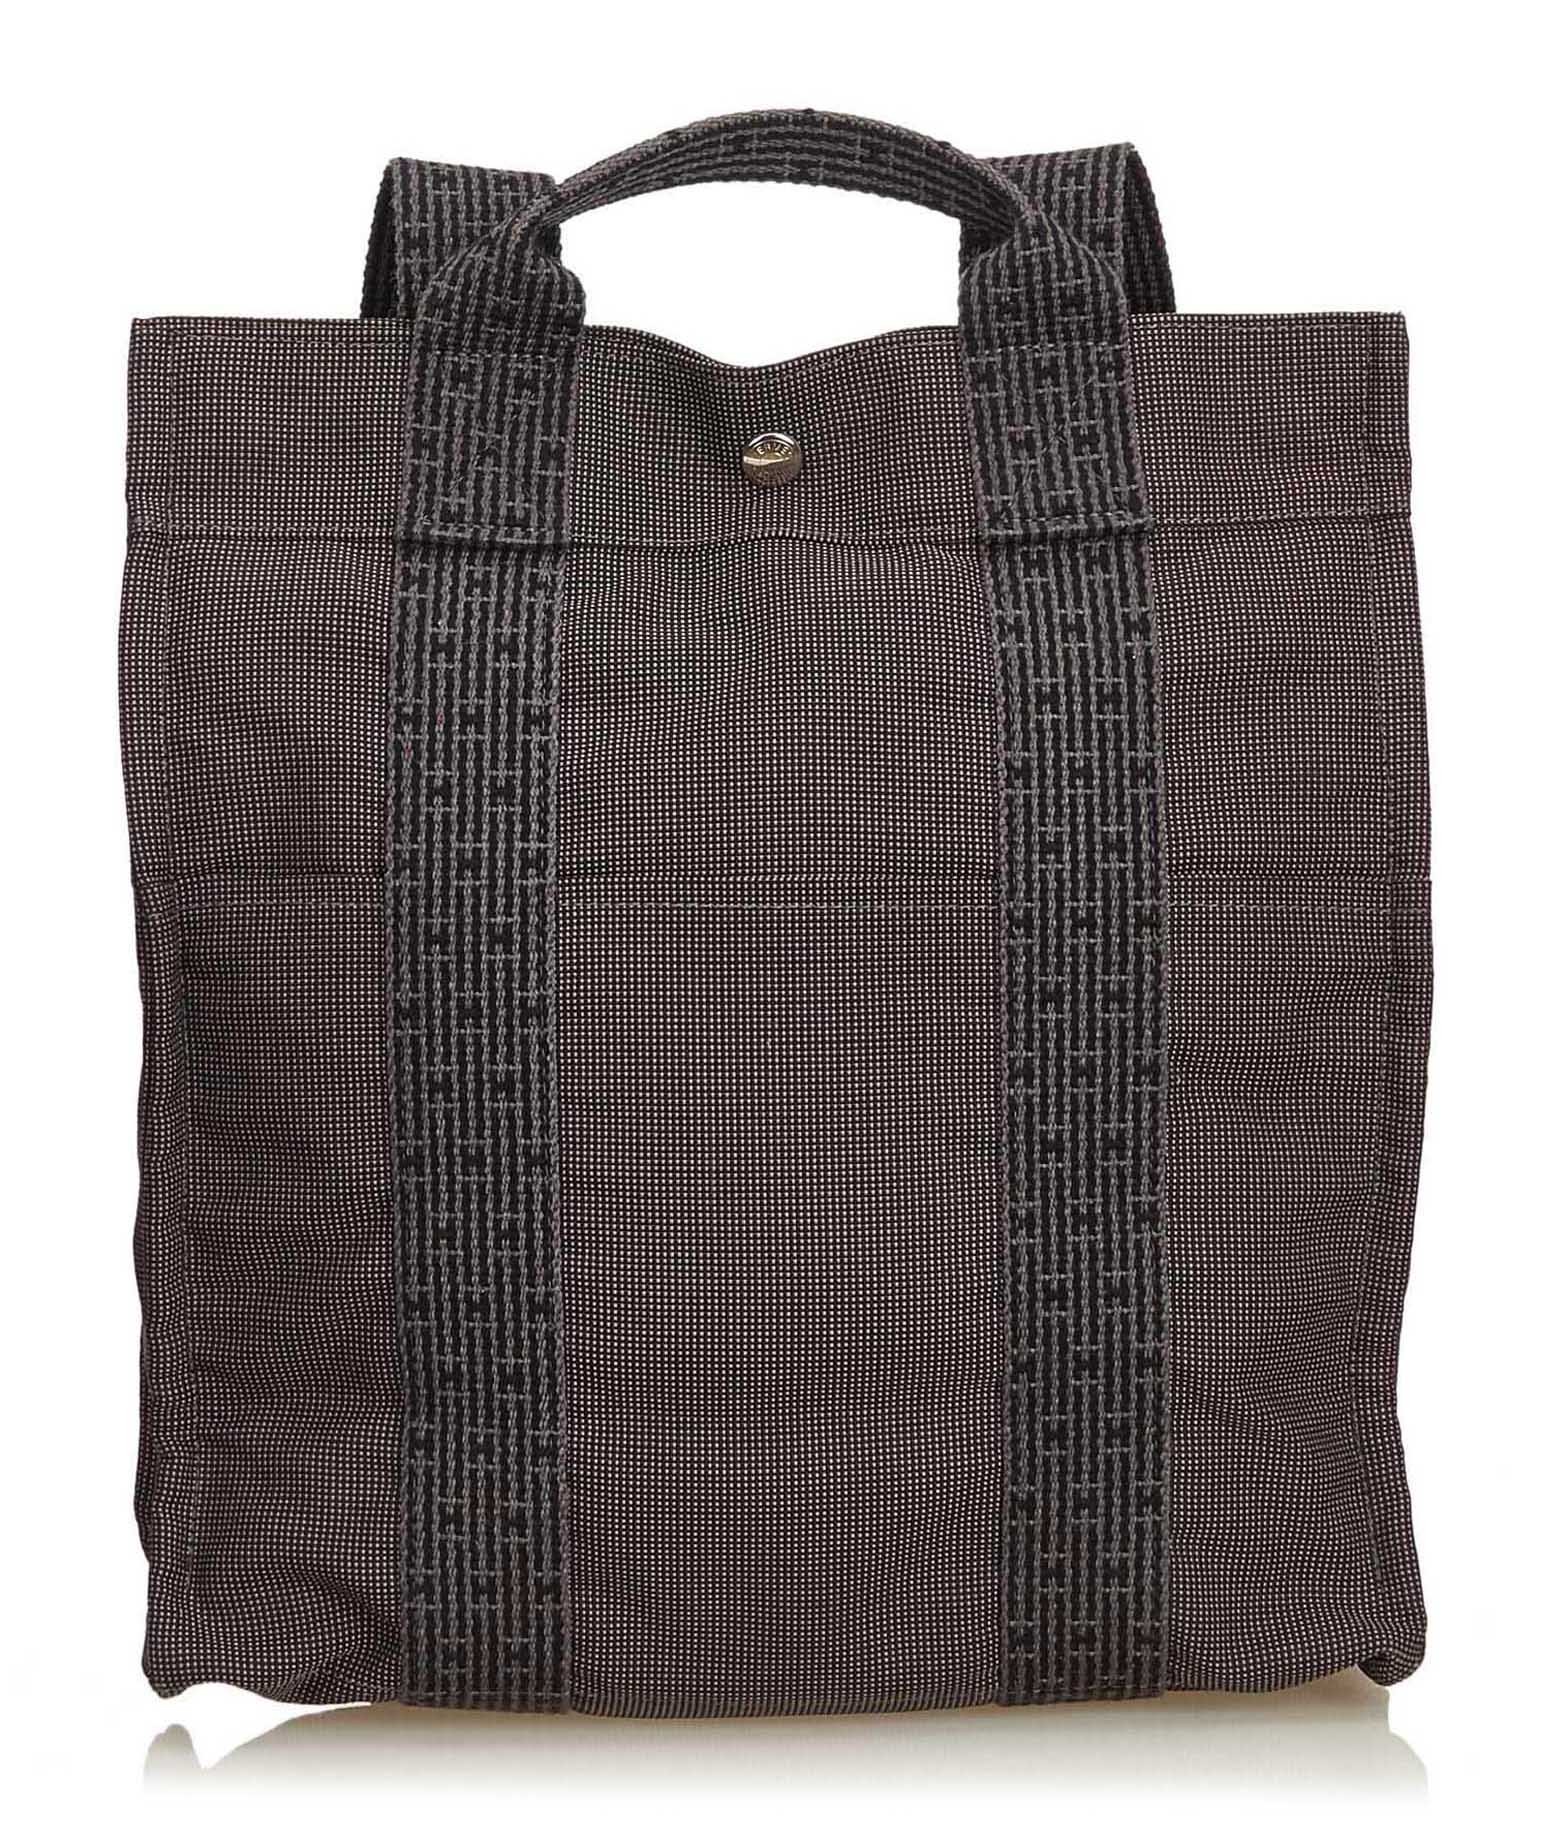 Hermes, Bags, Hermes Canvas Backpack